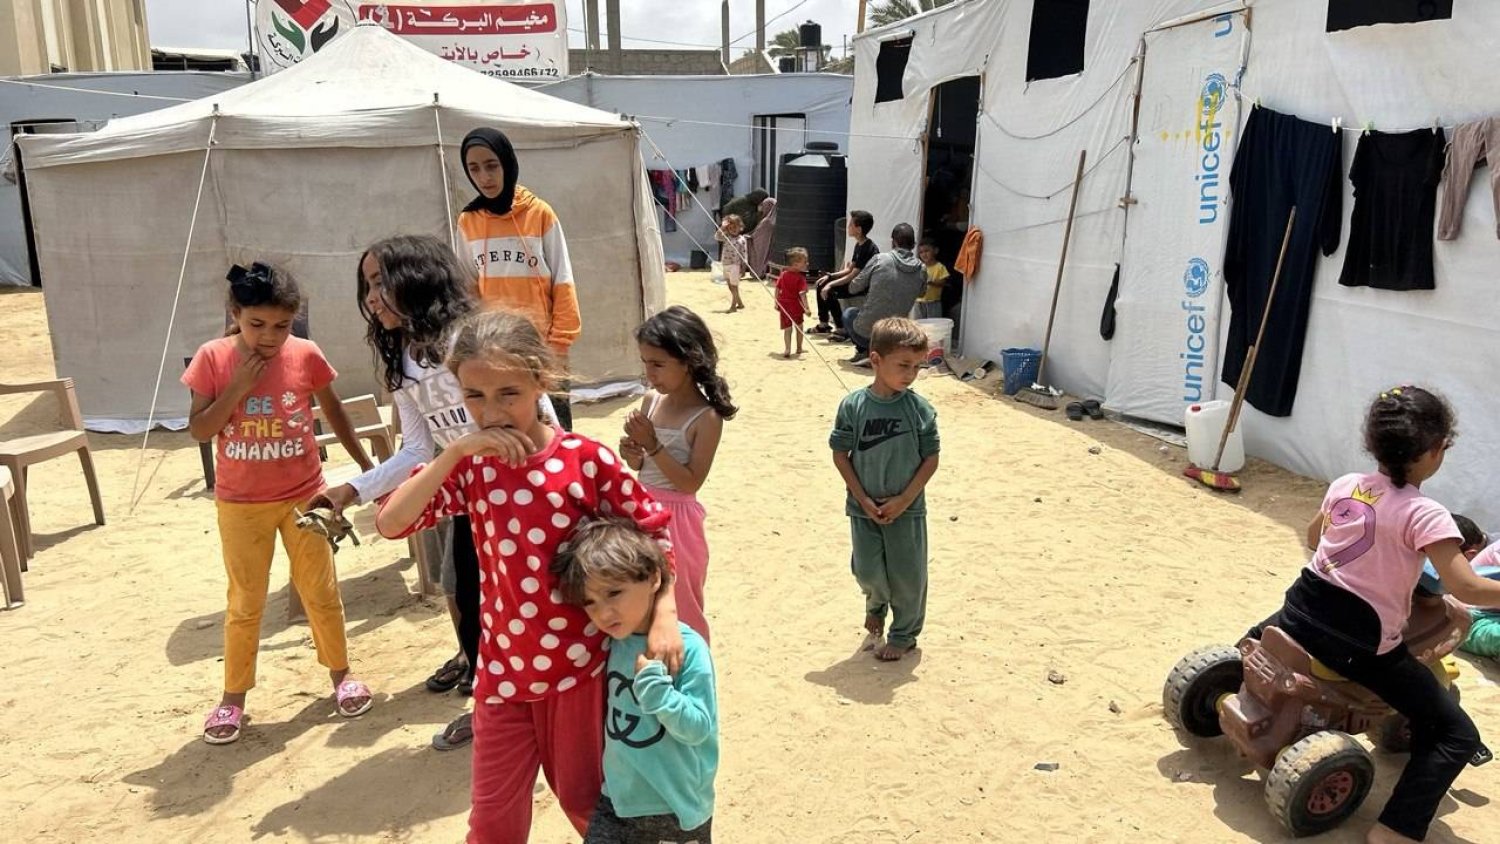 المخيم يوفر الإيواء بشكل أساسي إضافة إلى وجبات الطعام والمياه الصالحة للشرب (وكالة أنباء العالم العربي)